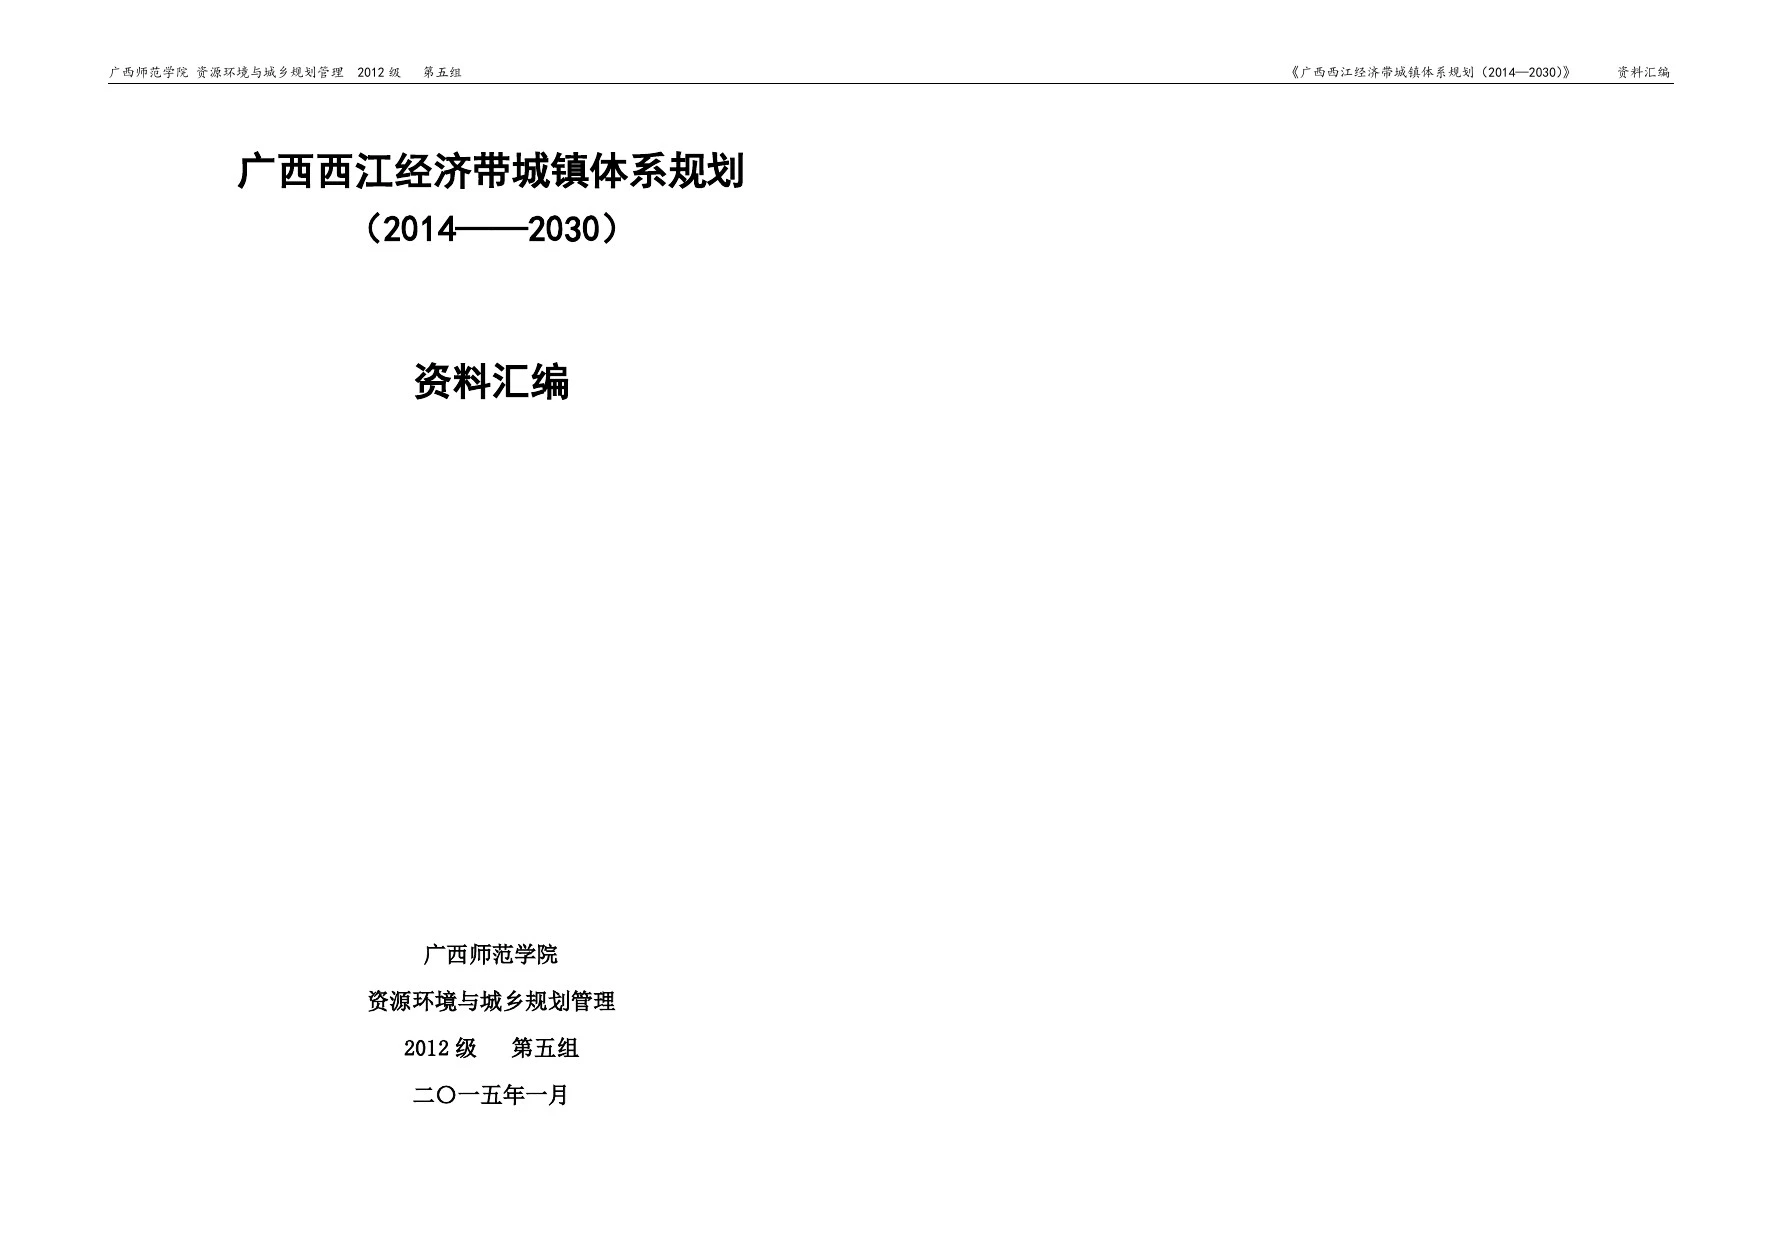 广西西江经济带城镇体系规划 资料汇编0305